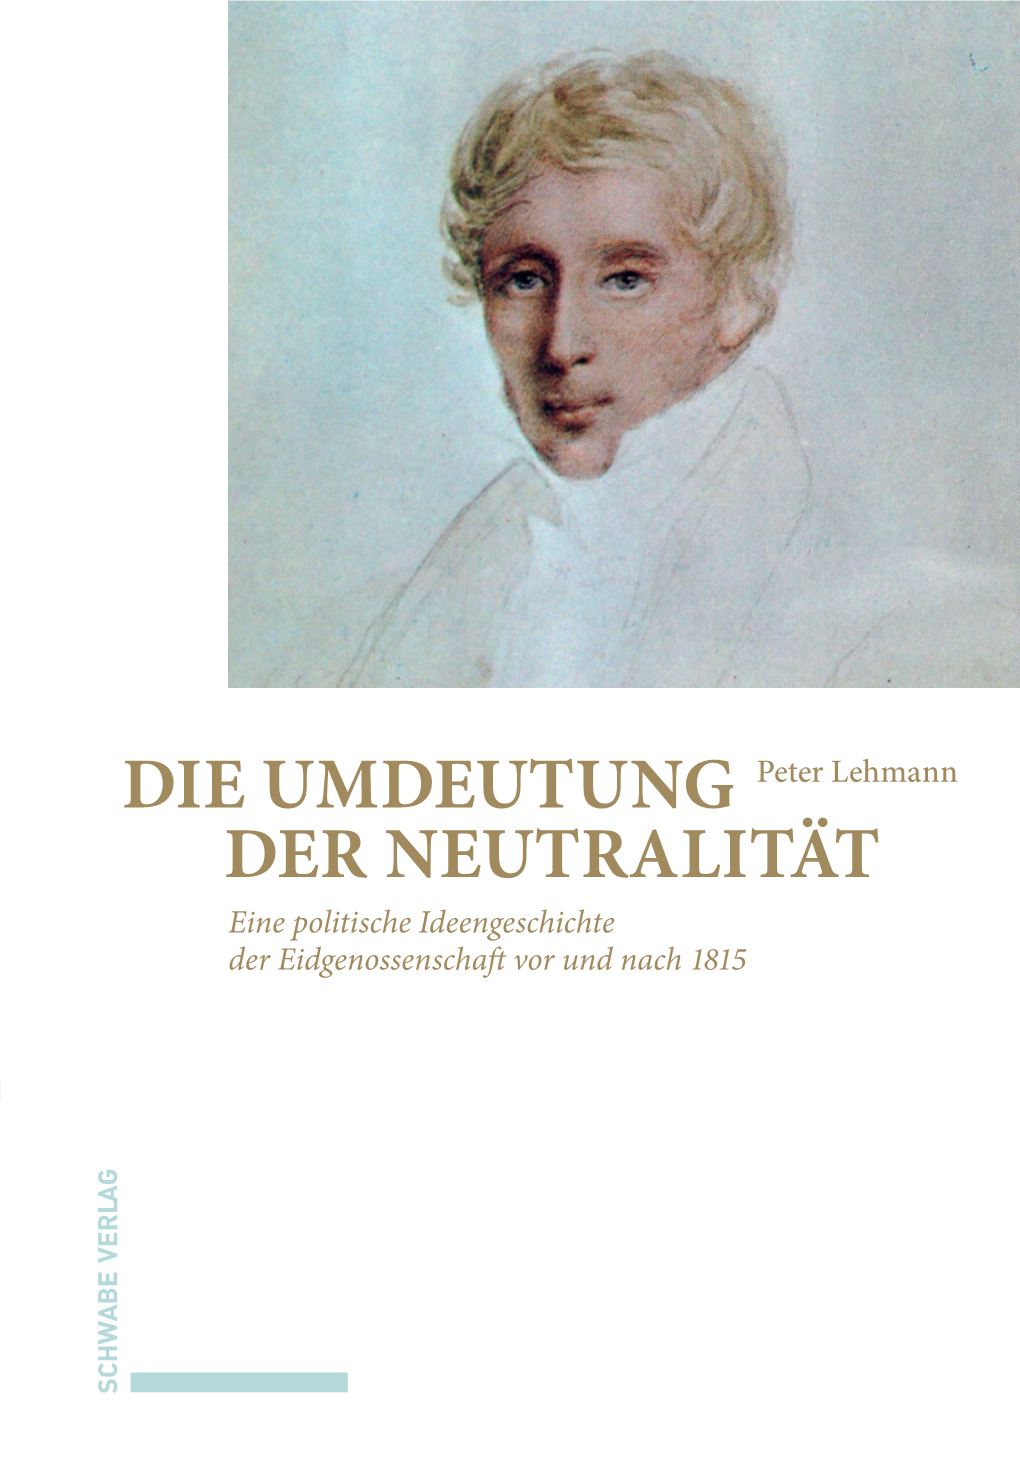 DIE UMDEUTUNG DER NEUTRALITÄT Eine Politische Ideengeschichte Der Eidgenossenschaft Vor Und Nach 1815 Peter Lehmann